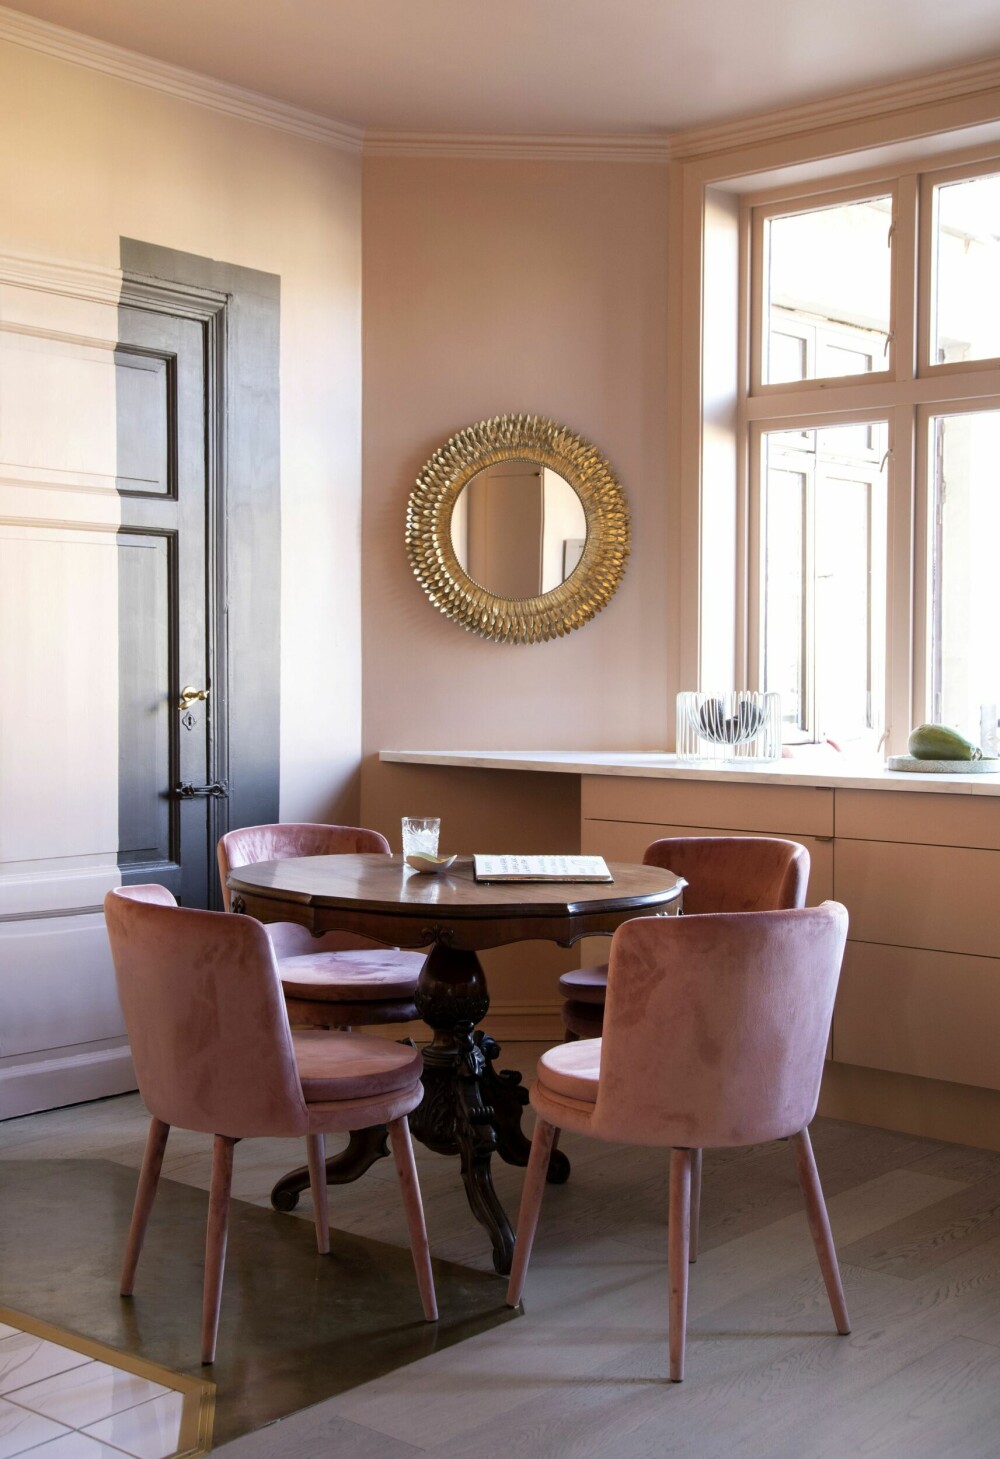 Spiseplassen på kjøkkenet består av et gammelt trebord og helrosa stoler fra Ellos. En del av døren ut mot baktrappen og et område av veggen er malt i fargen Tjærebrun. – Jeg kunne tenke meg et innslag av brunt sammen med det rosa, og jeg liker denne løsningen.